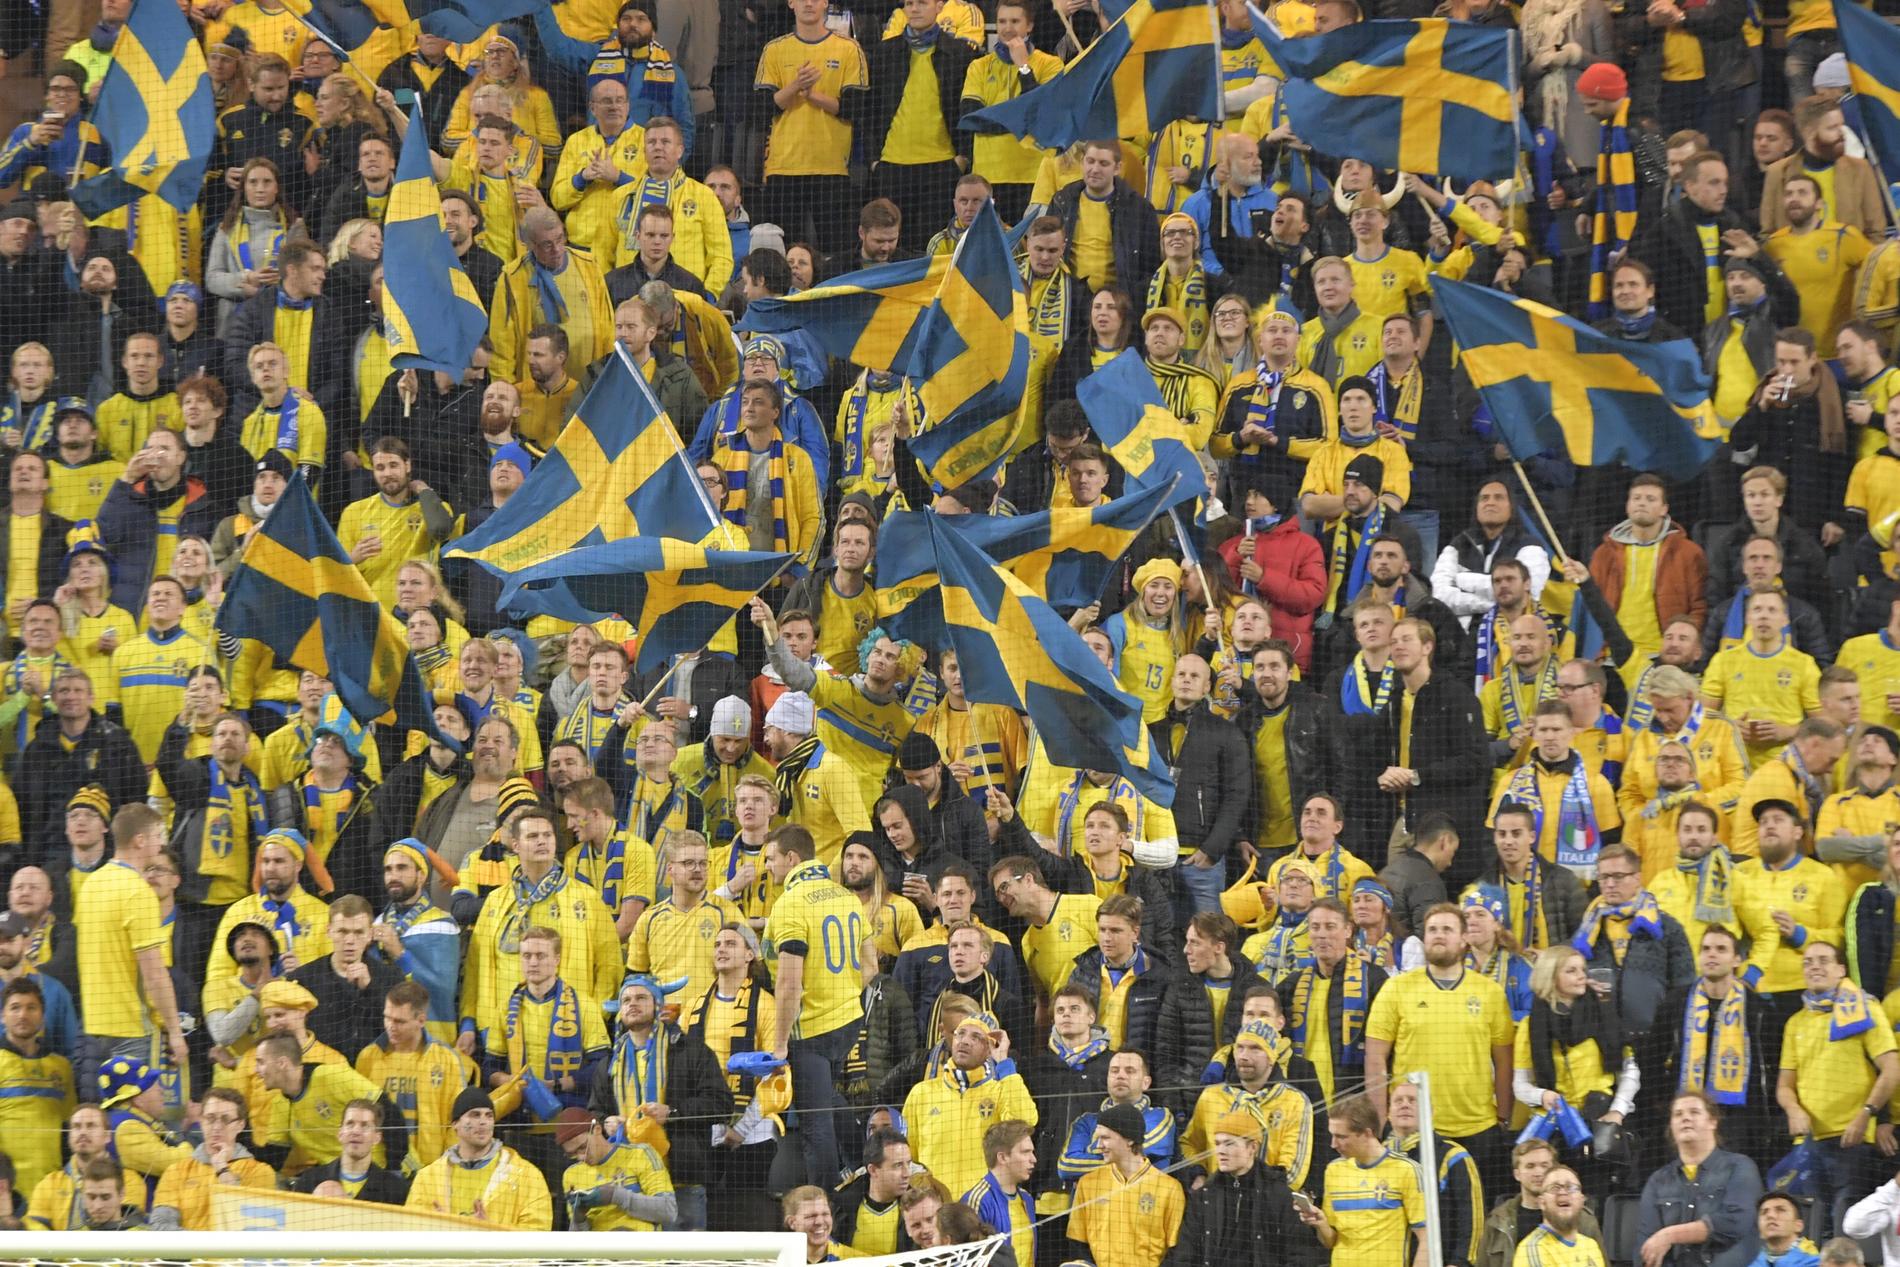 Fotbollsfans i Göteborg, Malmö, Stockholm och Umeå kan titta på Sveriges gruppspelsmatcher på storbild. Arkivbild.